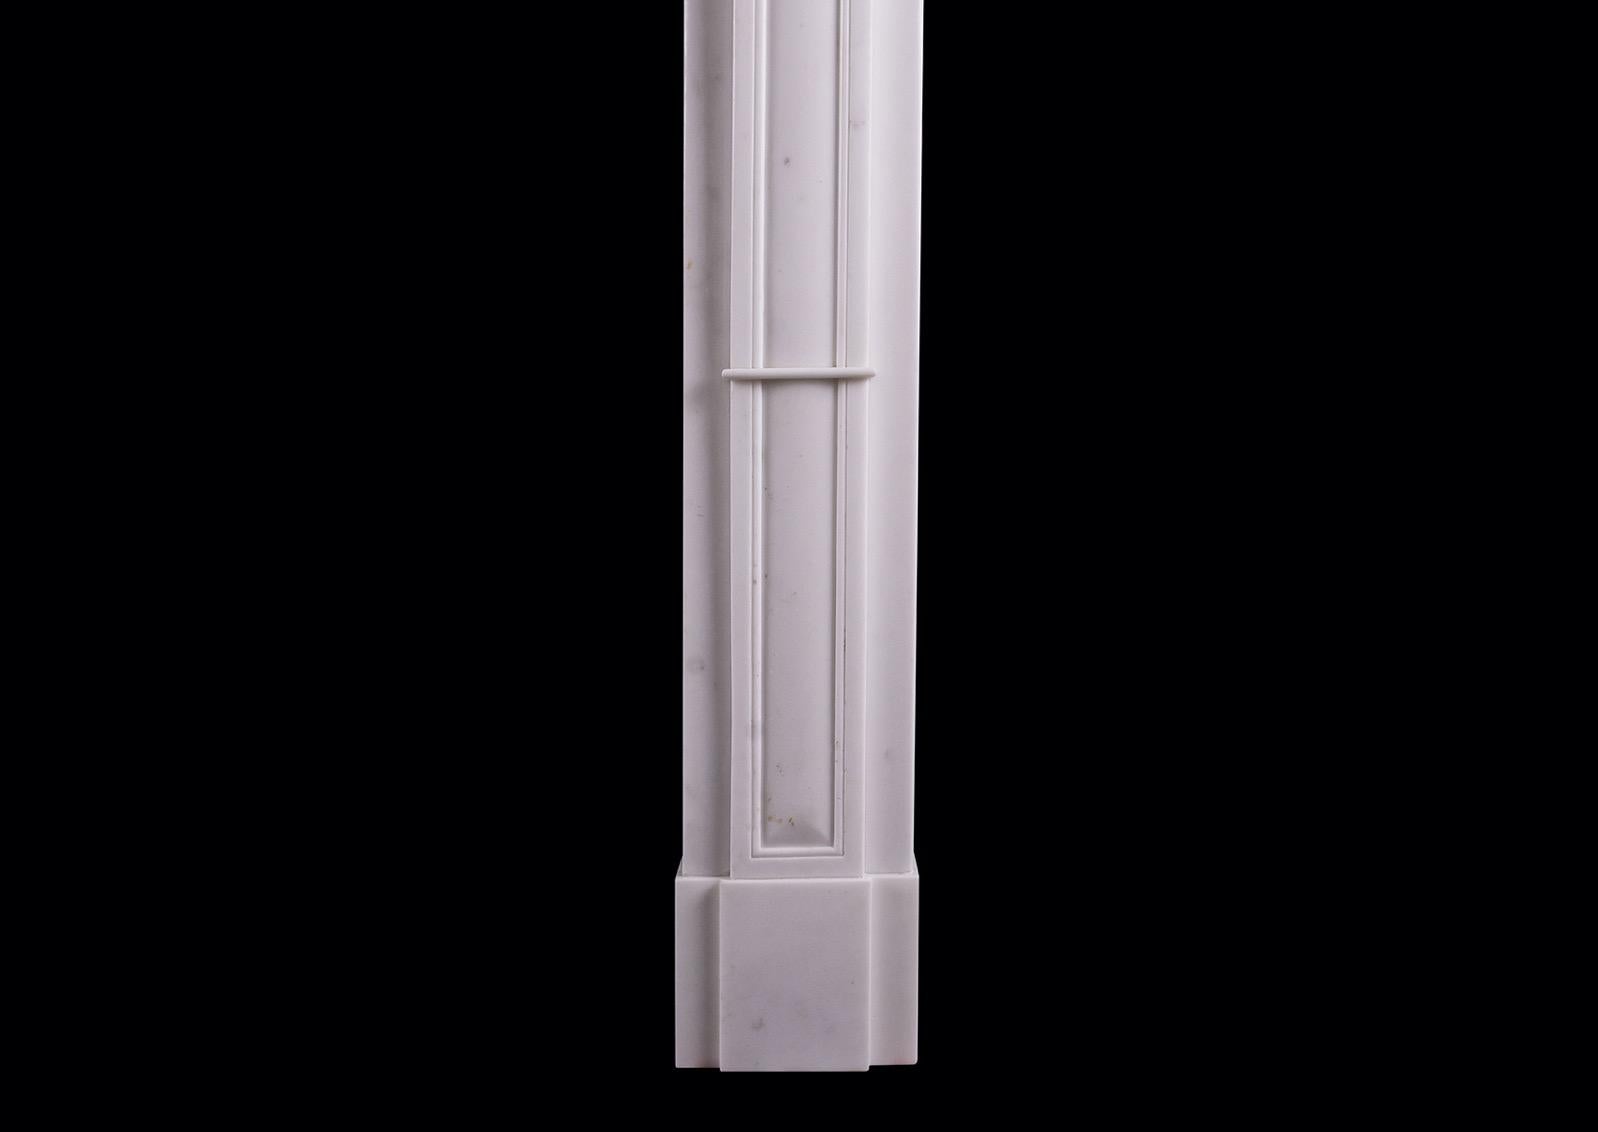 Une discrète cheminée en marbre Statuaire de style Régence anglaise. Les jambages à panneaux sont surmontés de délicates consoles. La frise à panneaux est surmontée d'une étagère en plan. Vers 1810.

Mesures : Largeur de l'étagère : 1528 mm 60